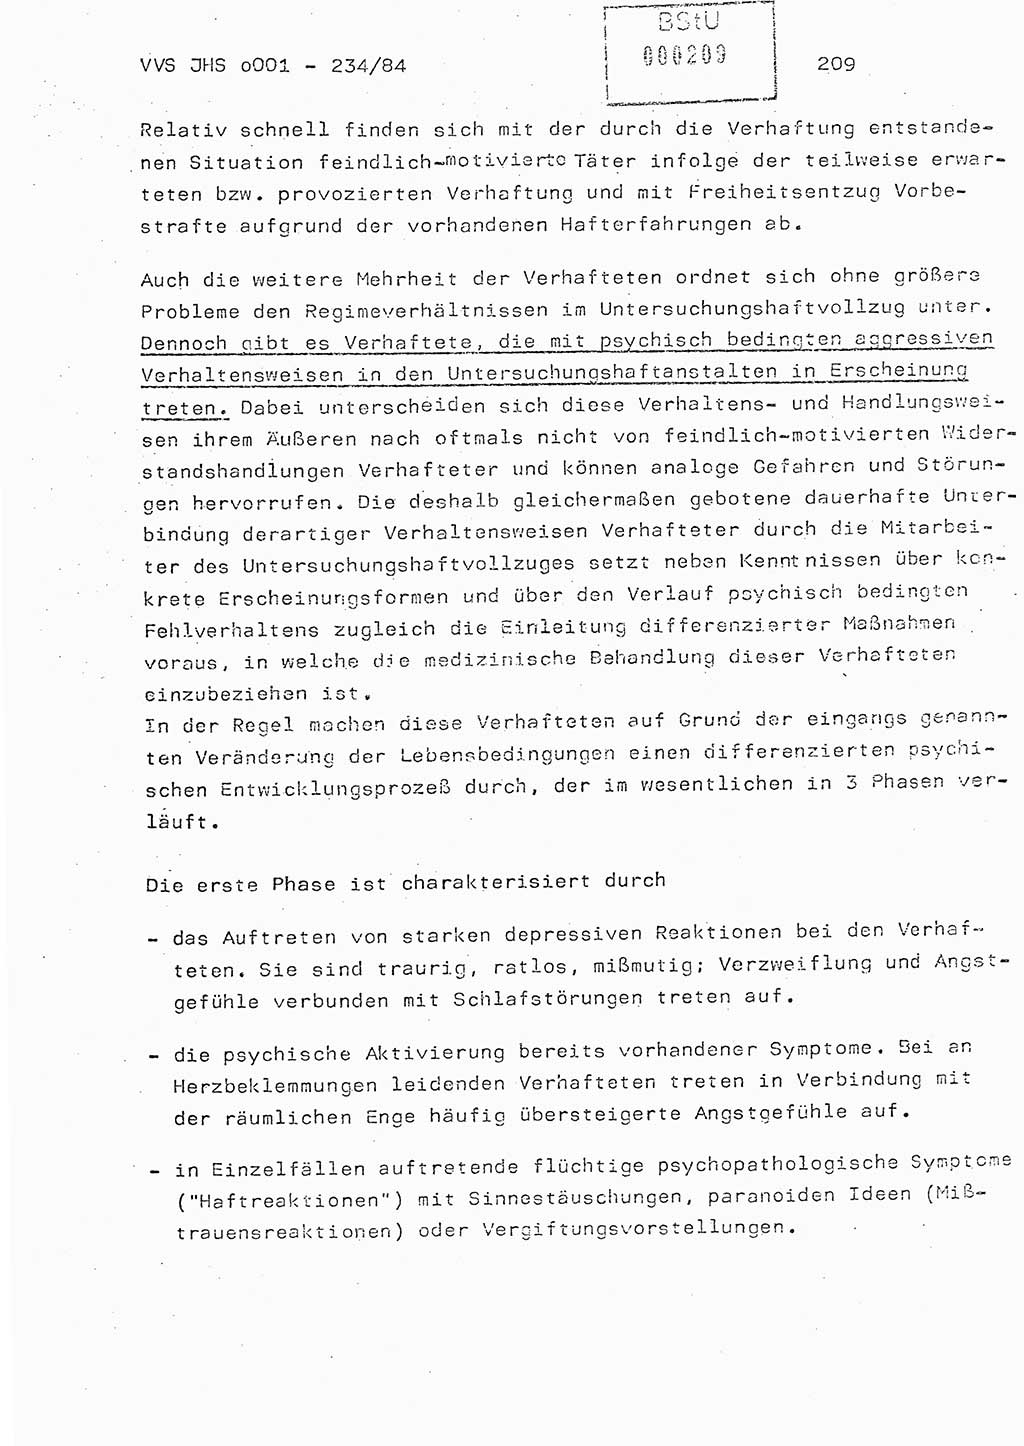 Dissertation Oberst Siegfried Rataizick (Abt. ⅩⅣ), Oberstleutnant Volkmar Heinz (Abt. ⅩⅣ), Oberstleutnant Werner Stein (HA Ⅸ), Hauptmann Heinz Conrad (JHS), Ministerium für Staatssicherheit (MfS) [Deutsche Demokratische Republik (DDR)], Juristische Hochschule (JHS), Vertrauliche Verschlußsache (VVS) o001-234/84, Potsdam 1984, Seite 209 (Diss. MfS DDR JHS VVS o001-234/84 1984, S. 209)